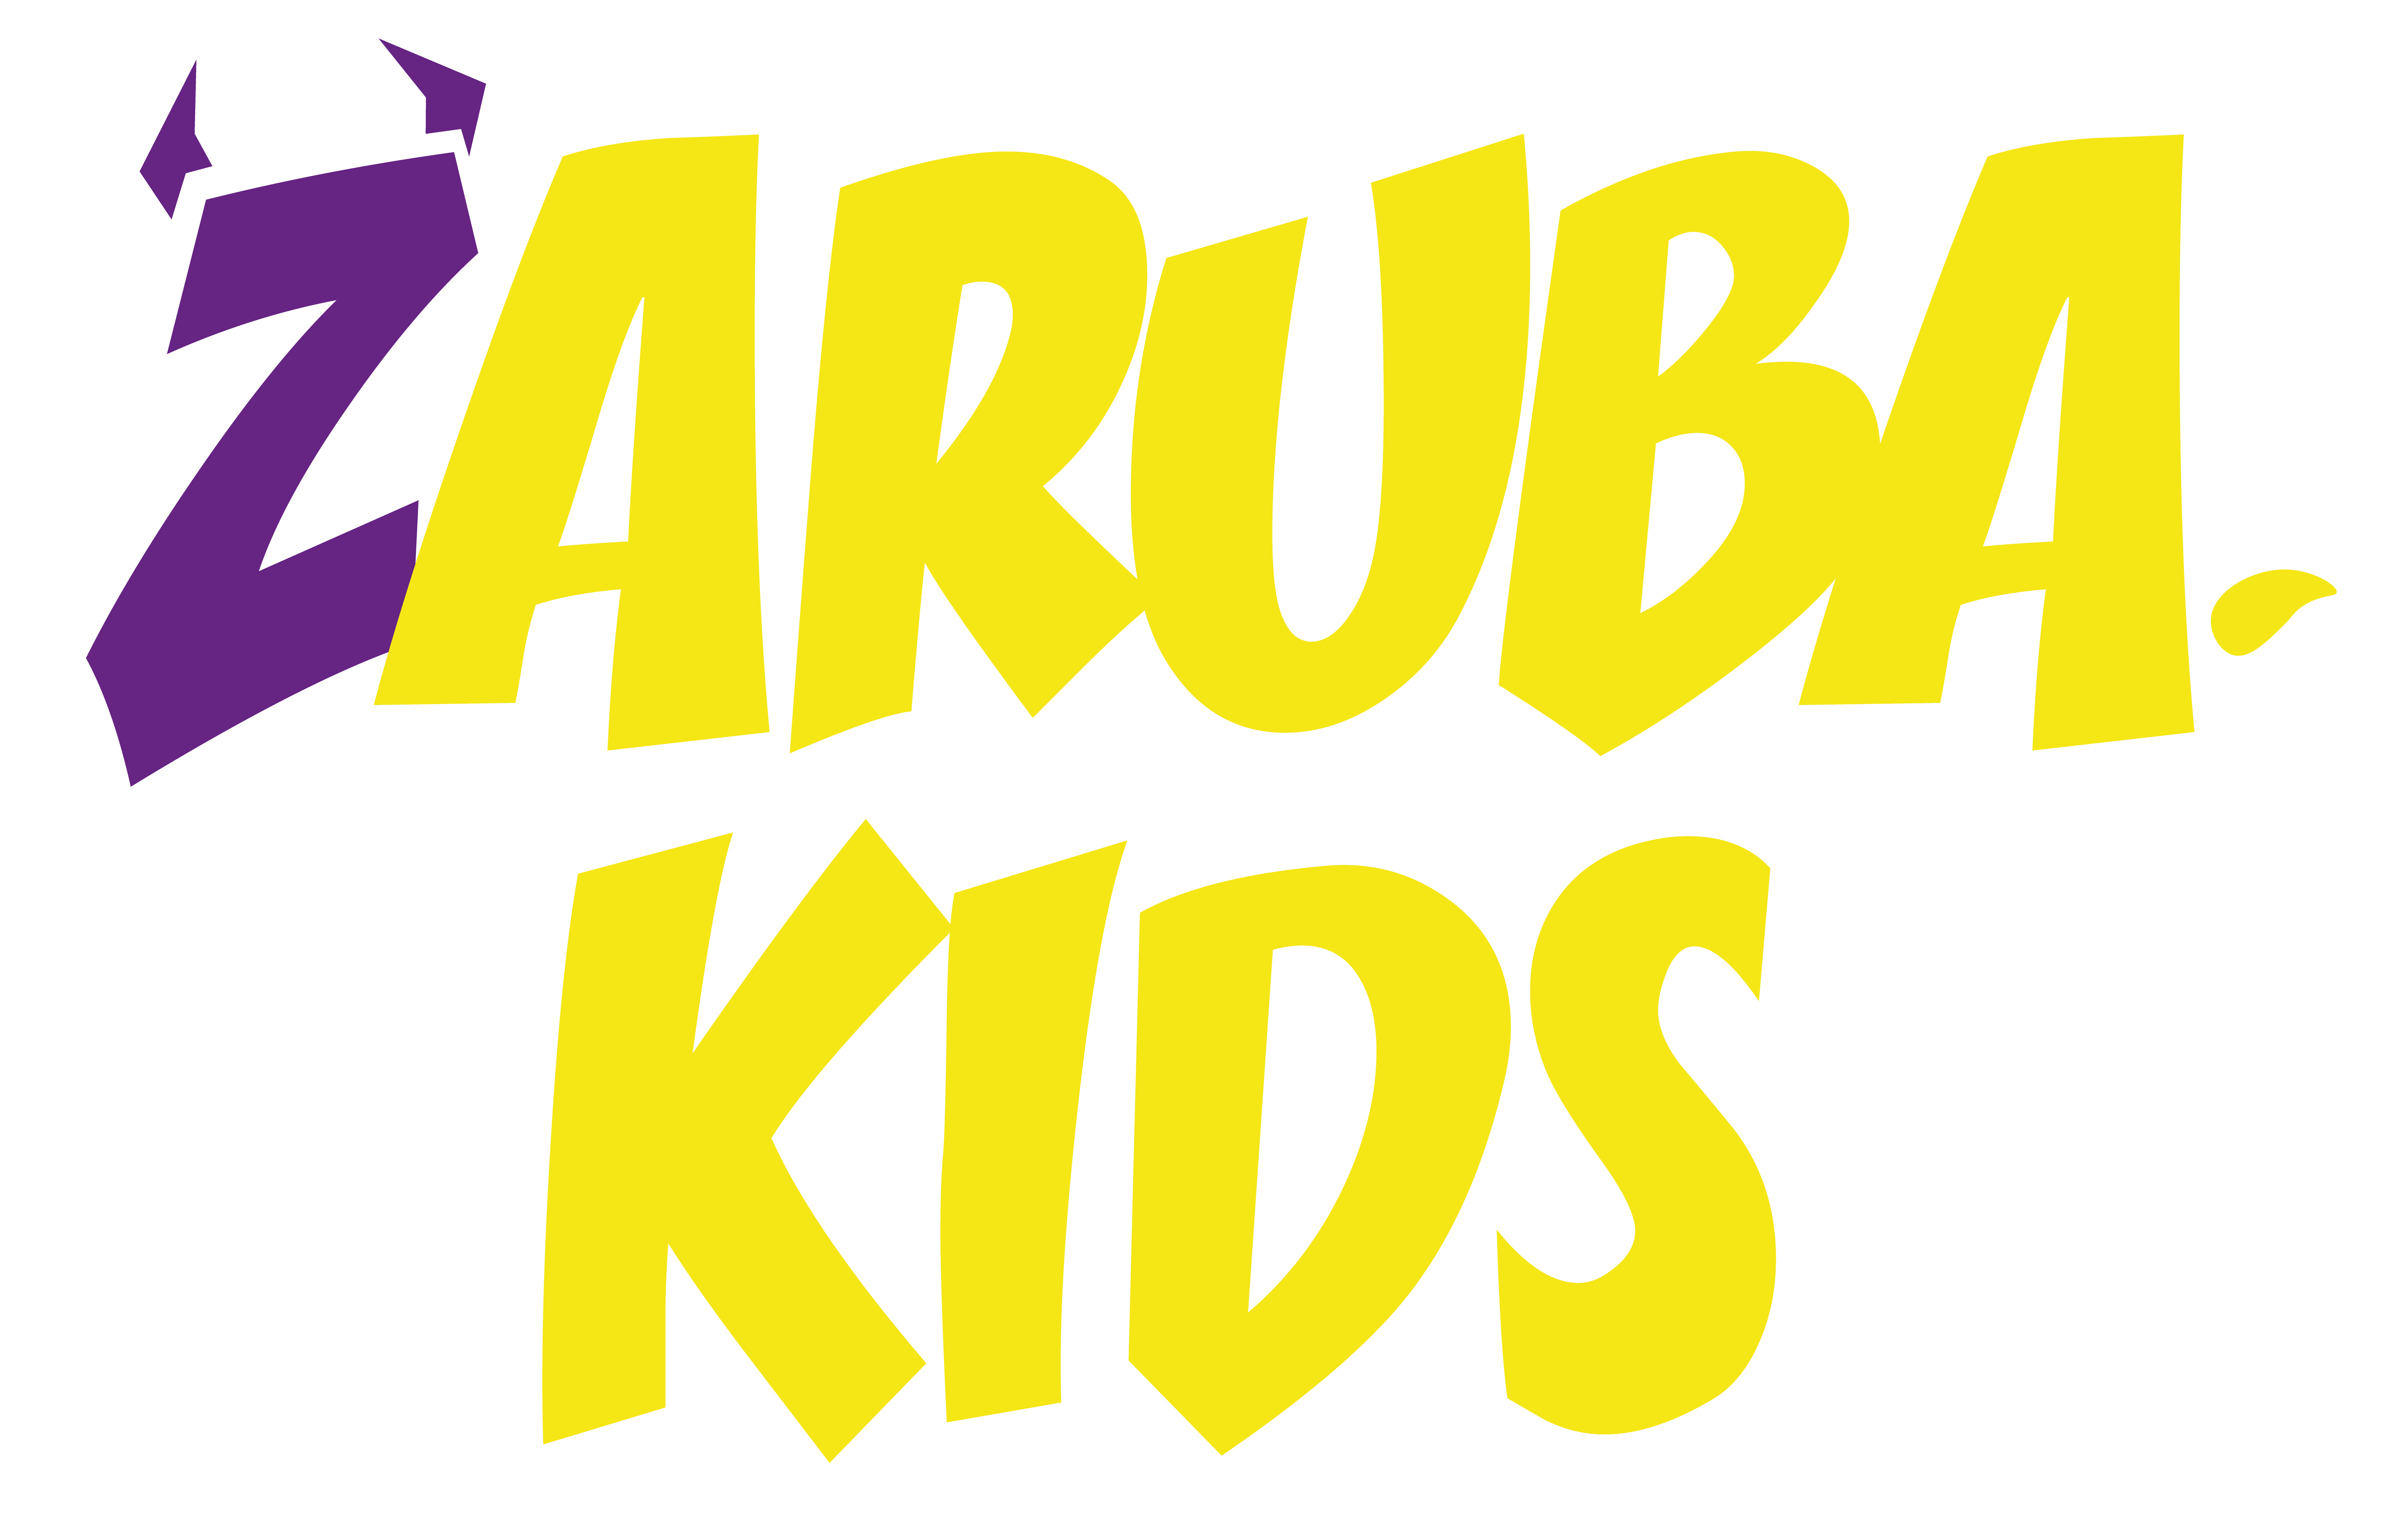 ZARUBA KIDS CLUB